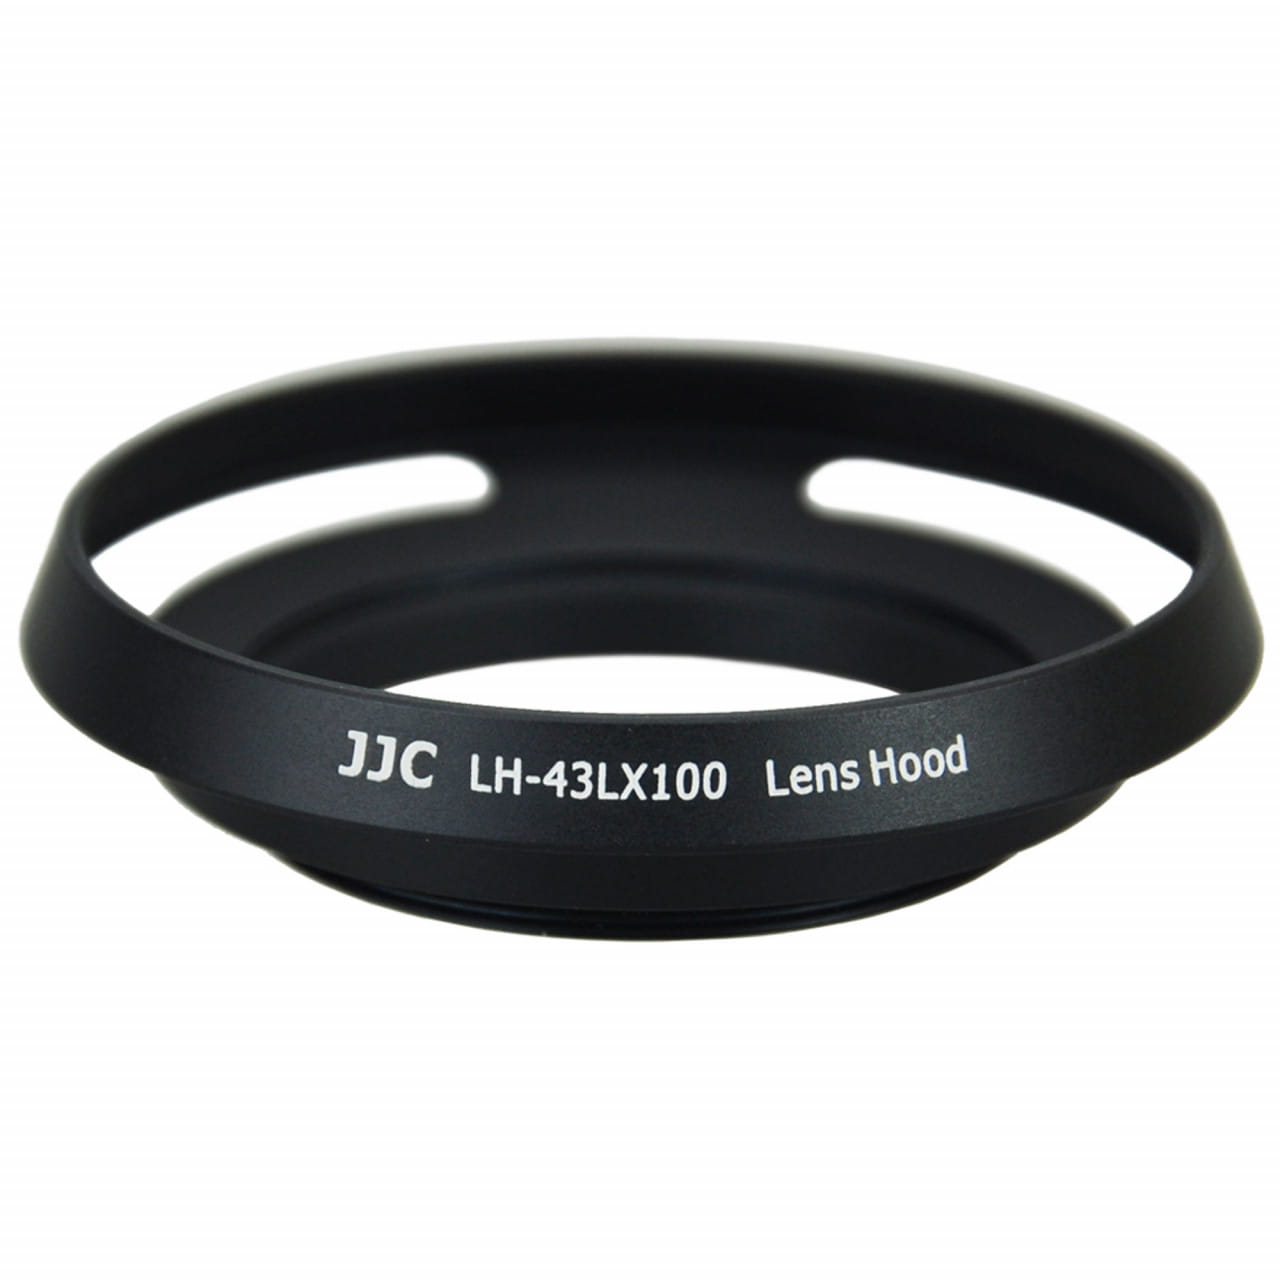 JJC Gegenlichtblende für Panasonic Lumix DMC-LX100 und Leica D-LUX (Typ 109) 43mm – schwarz LH-43LX100